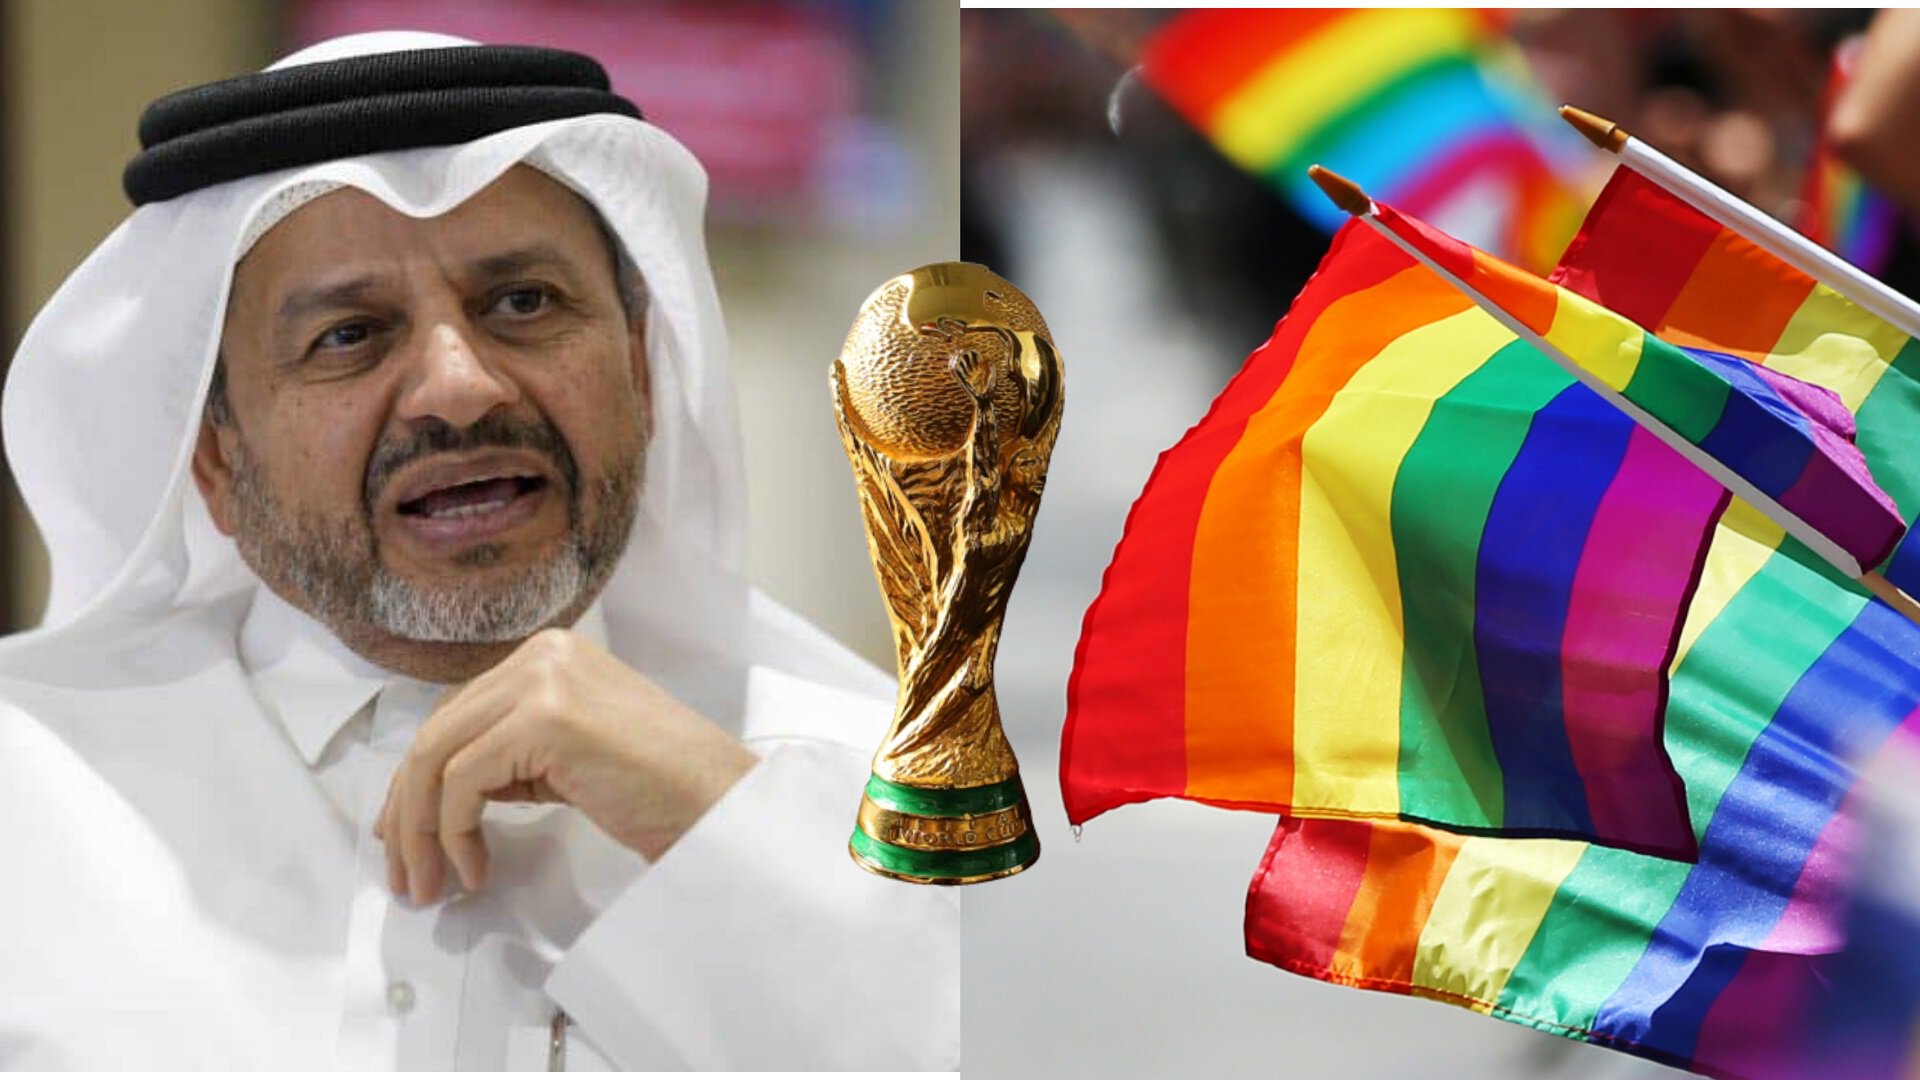 Флик о ЧМ-2022: В Катаре нарушаются права человека, отношение к гомосексуалам неприемлемо. Этот чемпионат не для обычного болельщика